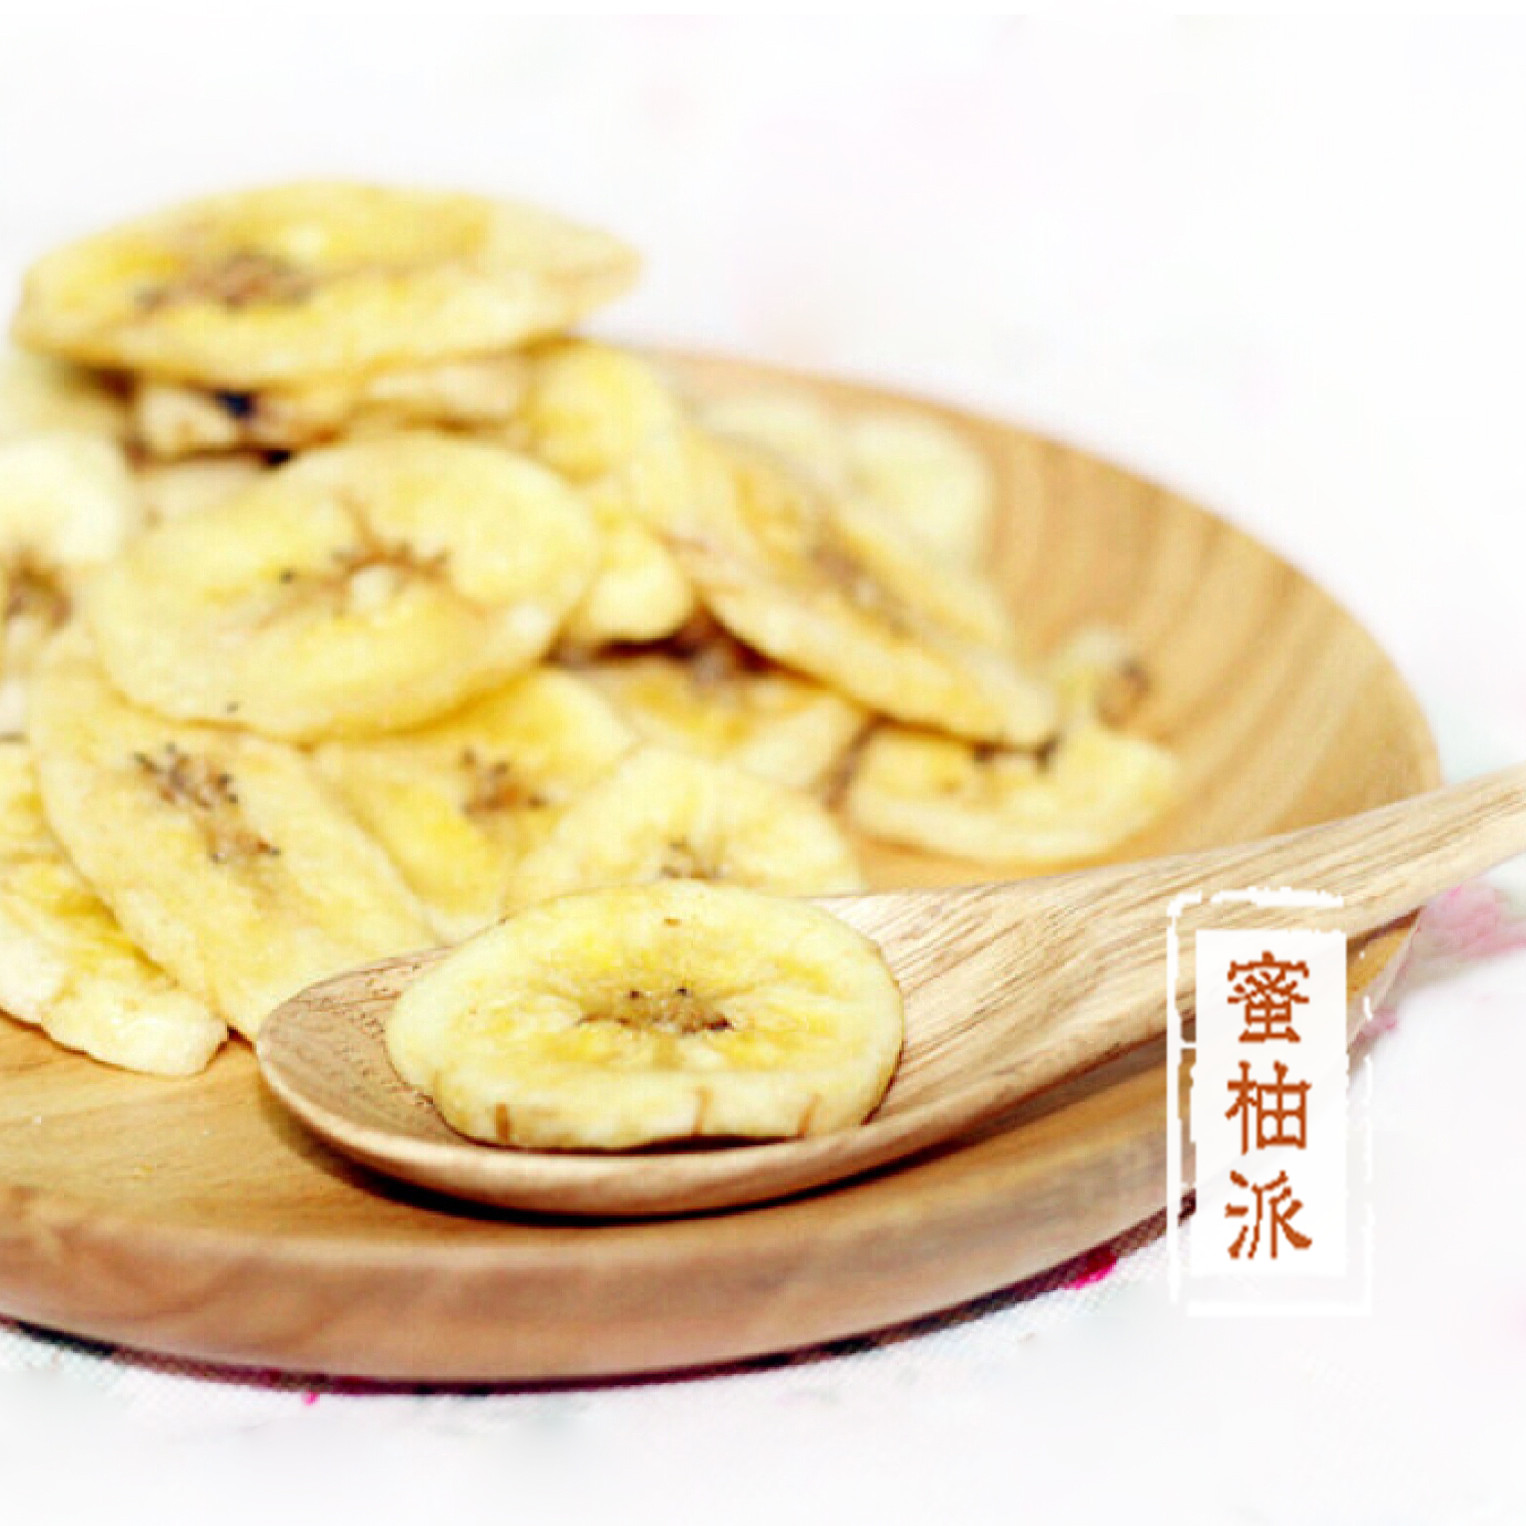 【蜜柚派-牛奶香蕉片】自制水果干 酥脆香脆 休闲零食 手工制作